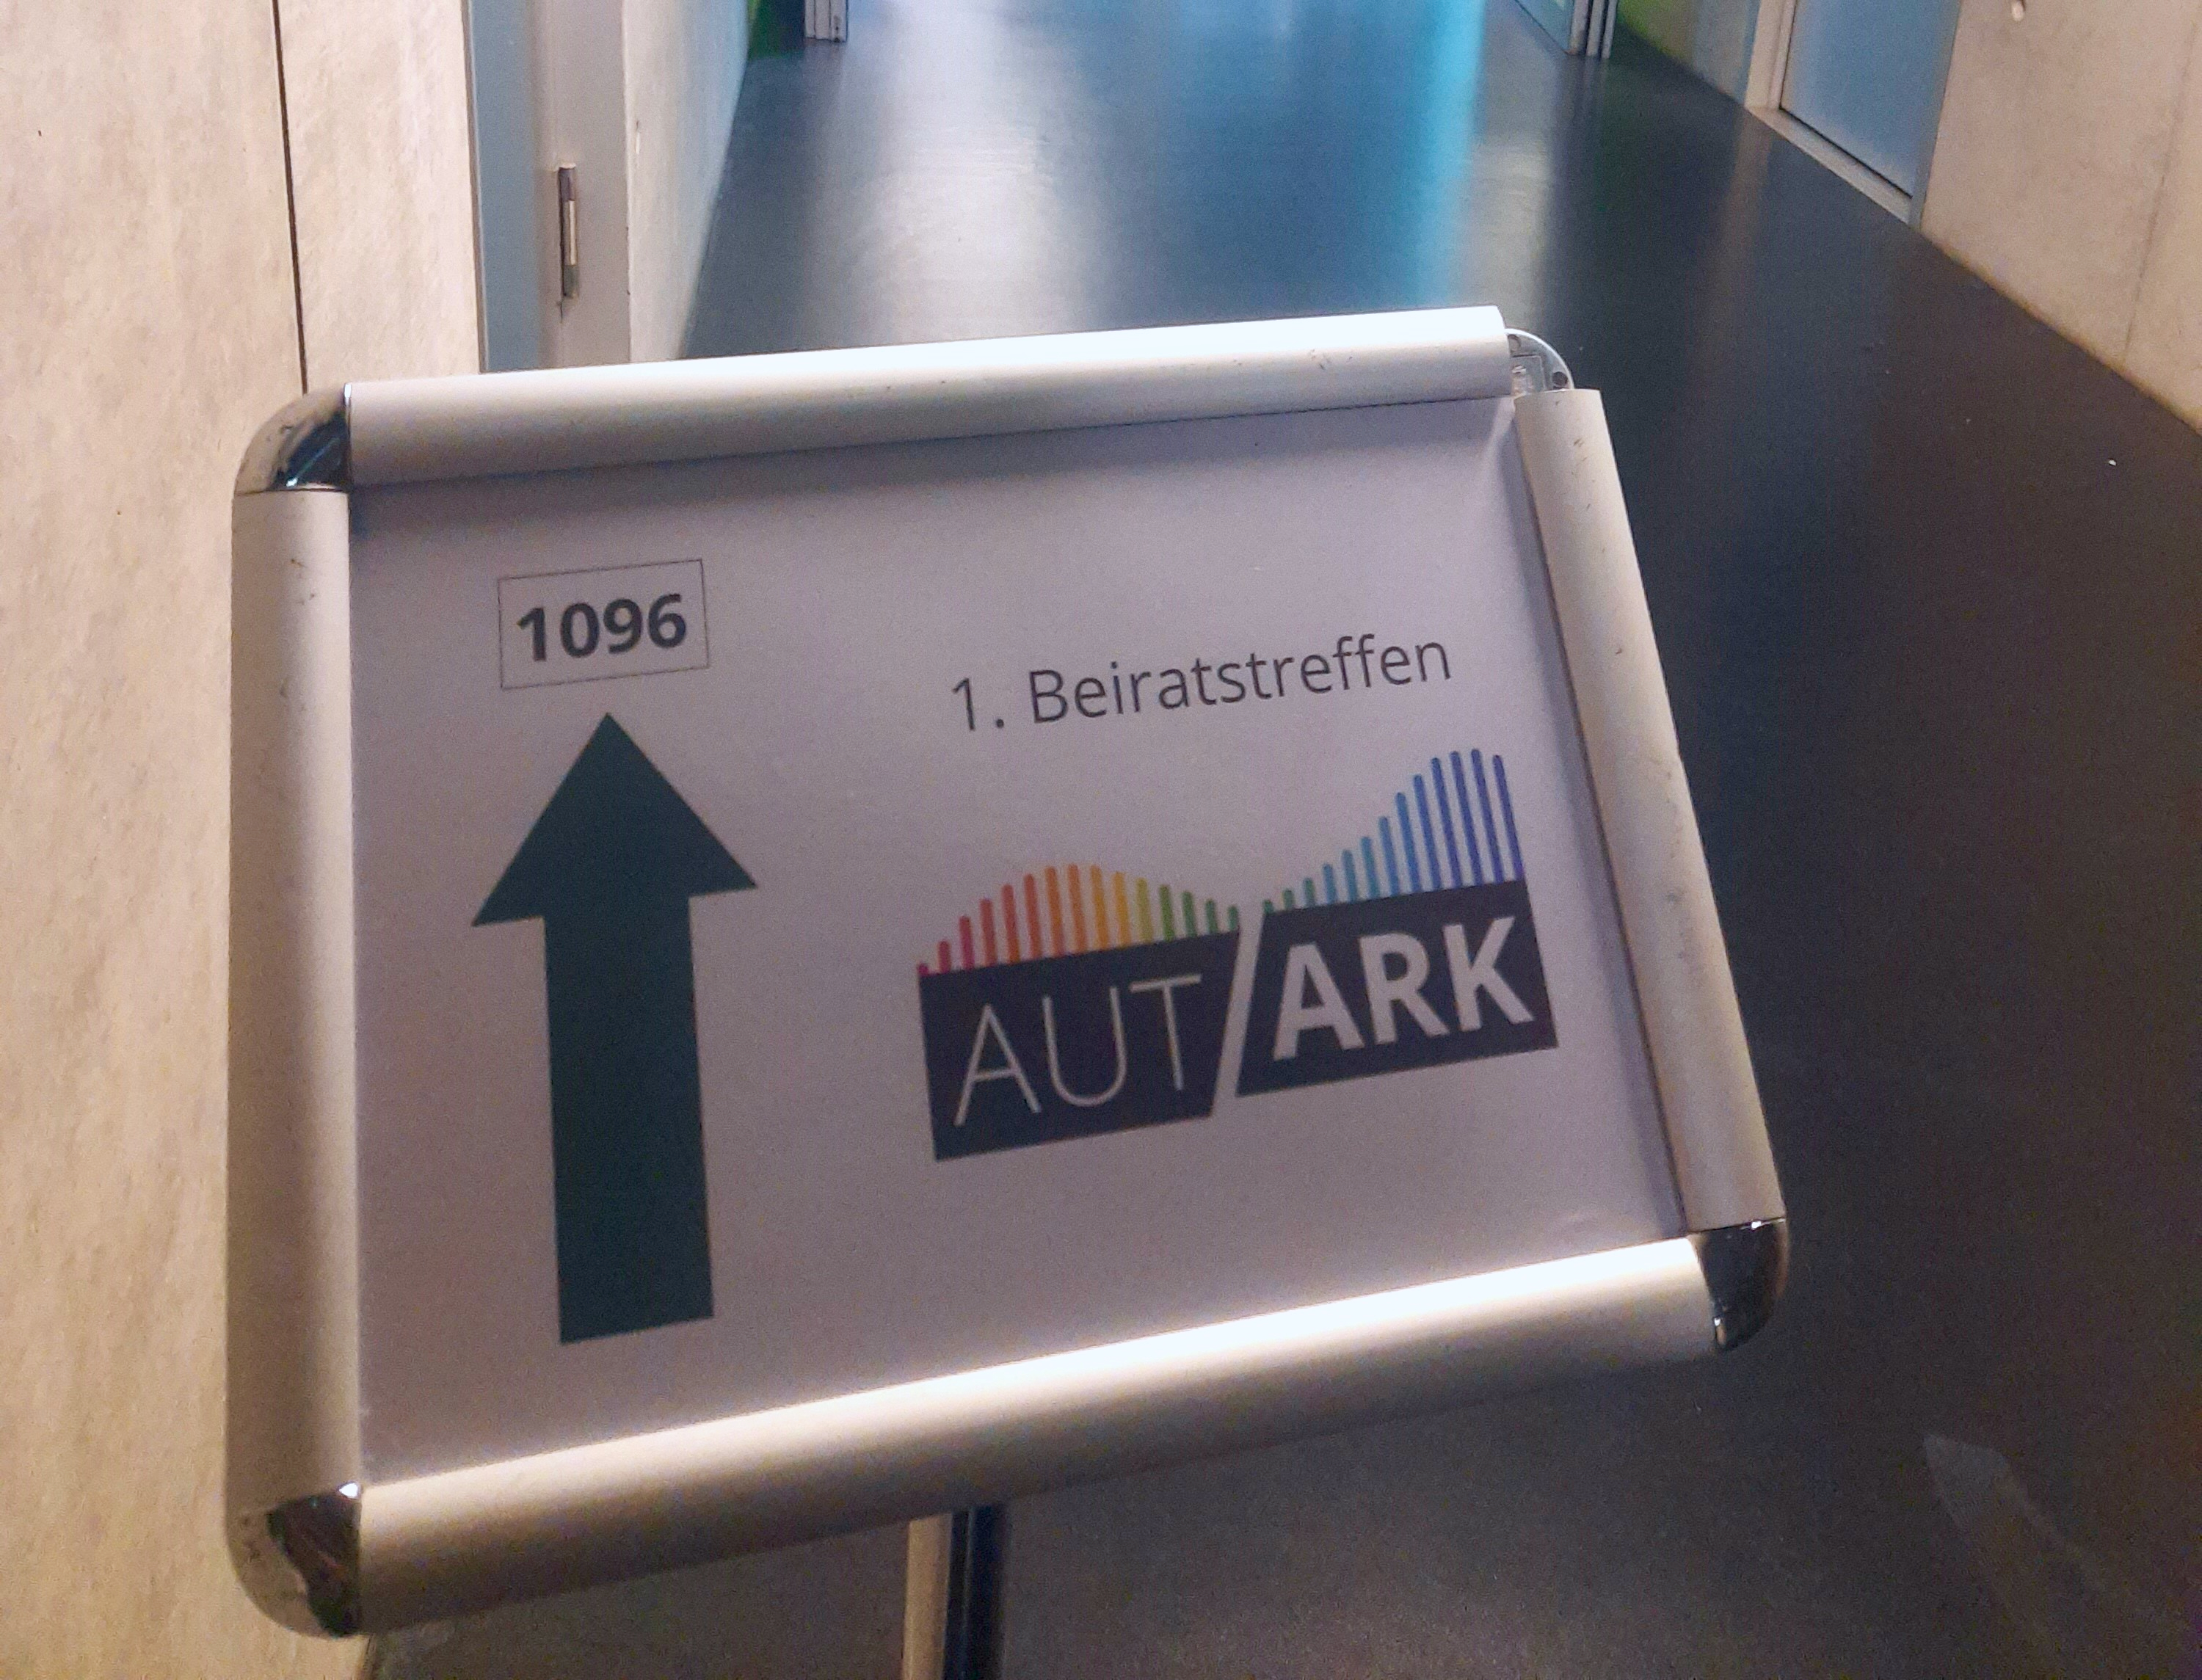 Aufstellschild in einem Flur mit einem Pfeil nach vorn und der Beschriftung "1096" Rechts daneben das Logo von Autark und "1. Beiratstreffen"